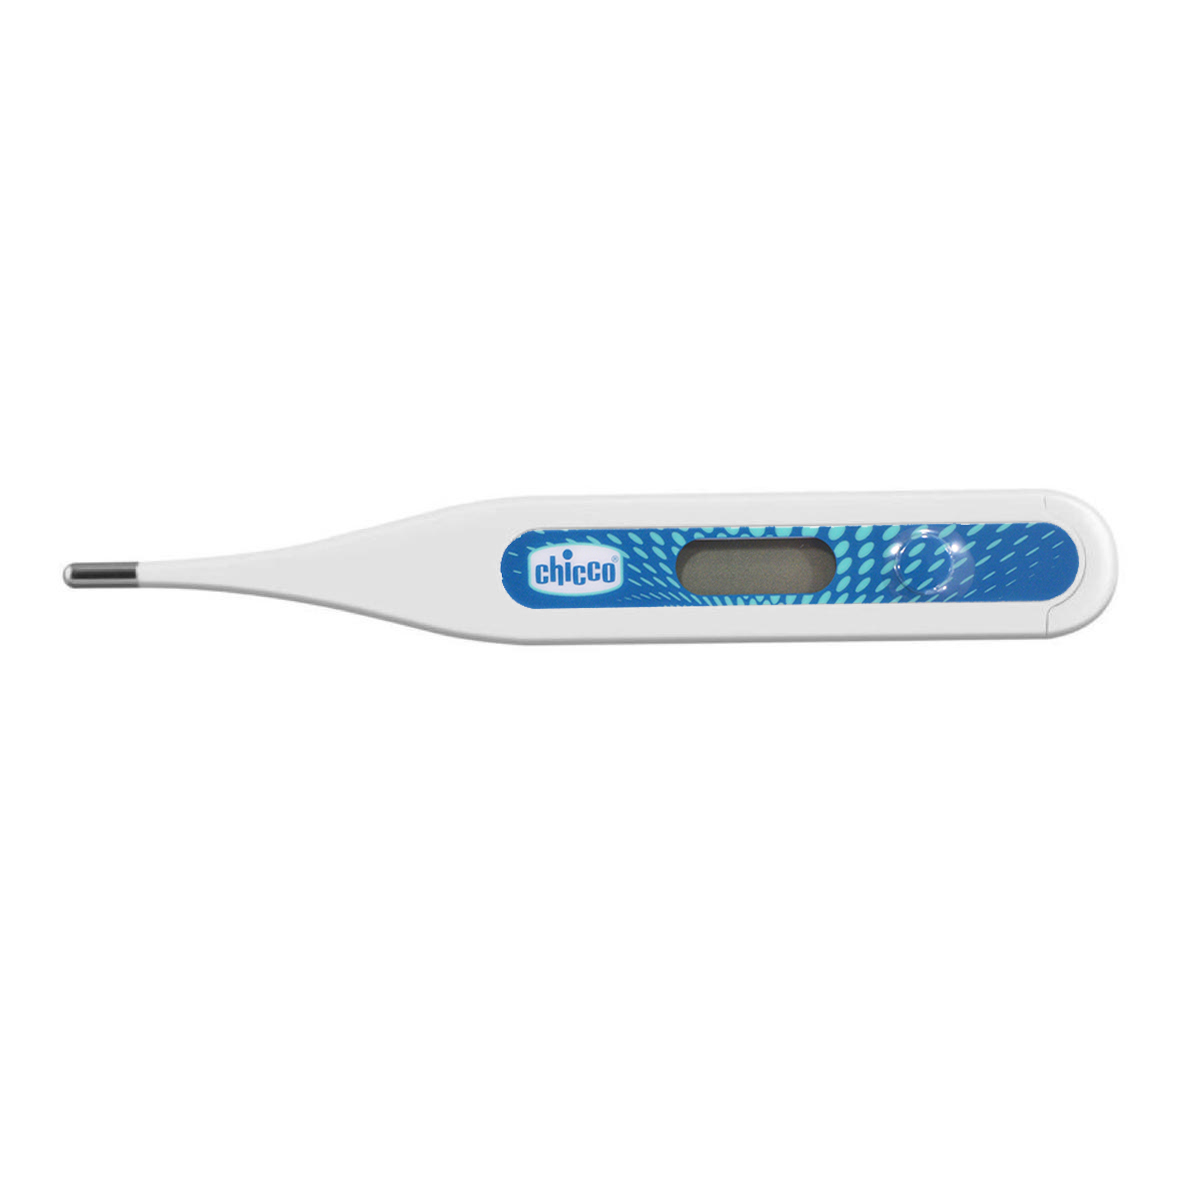 Ψηφιακό Θερμόμετρο Πυρετού Chicco Digi Baby H01-09059-00 Γαλάζιο 223223